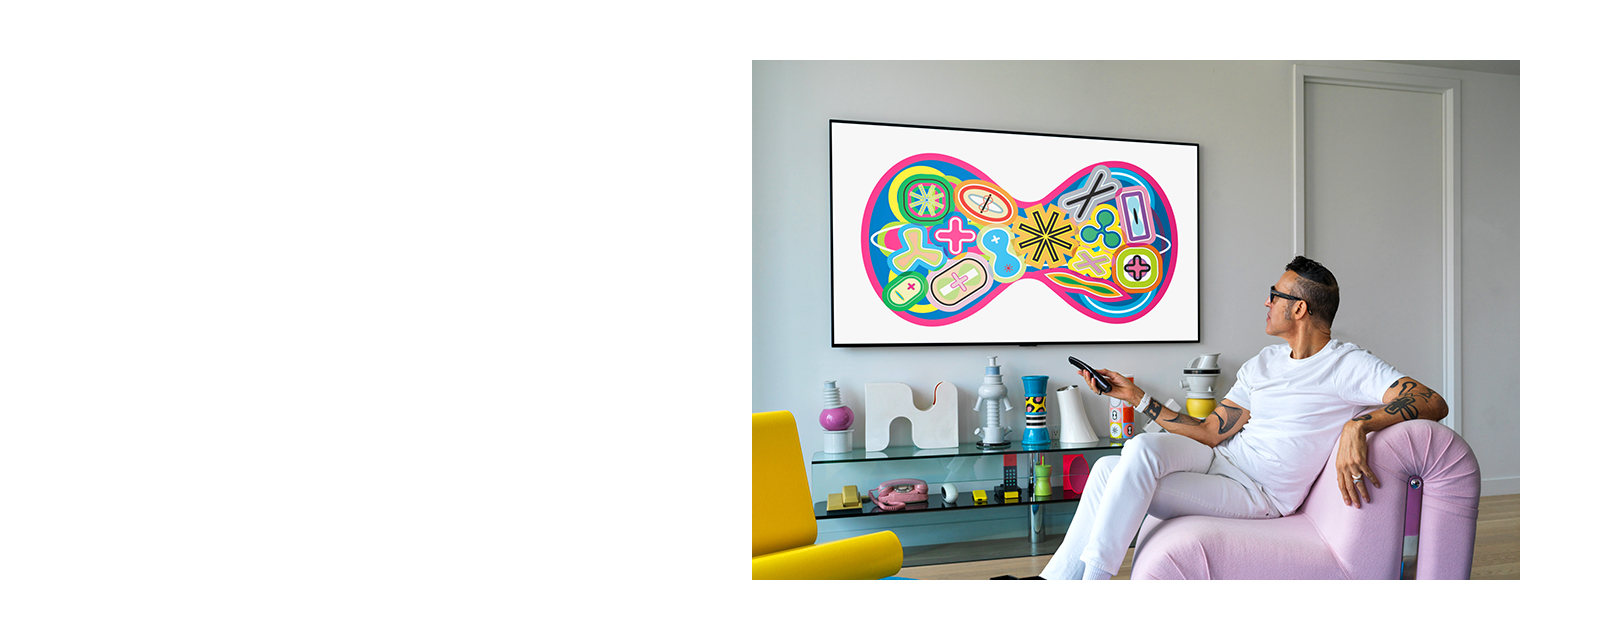 كريم رشيد، المصمم الصناعي، جالس على أريكة يشاهد تلفزيونًا يعرض لوحة فنية. 